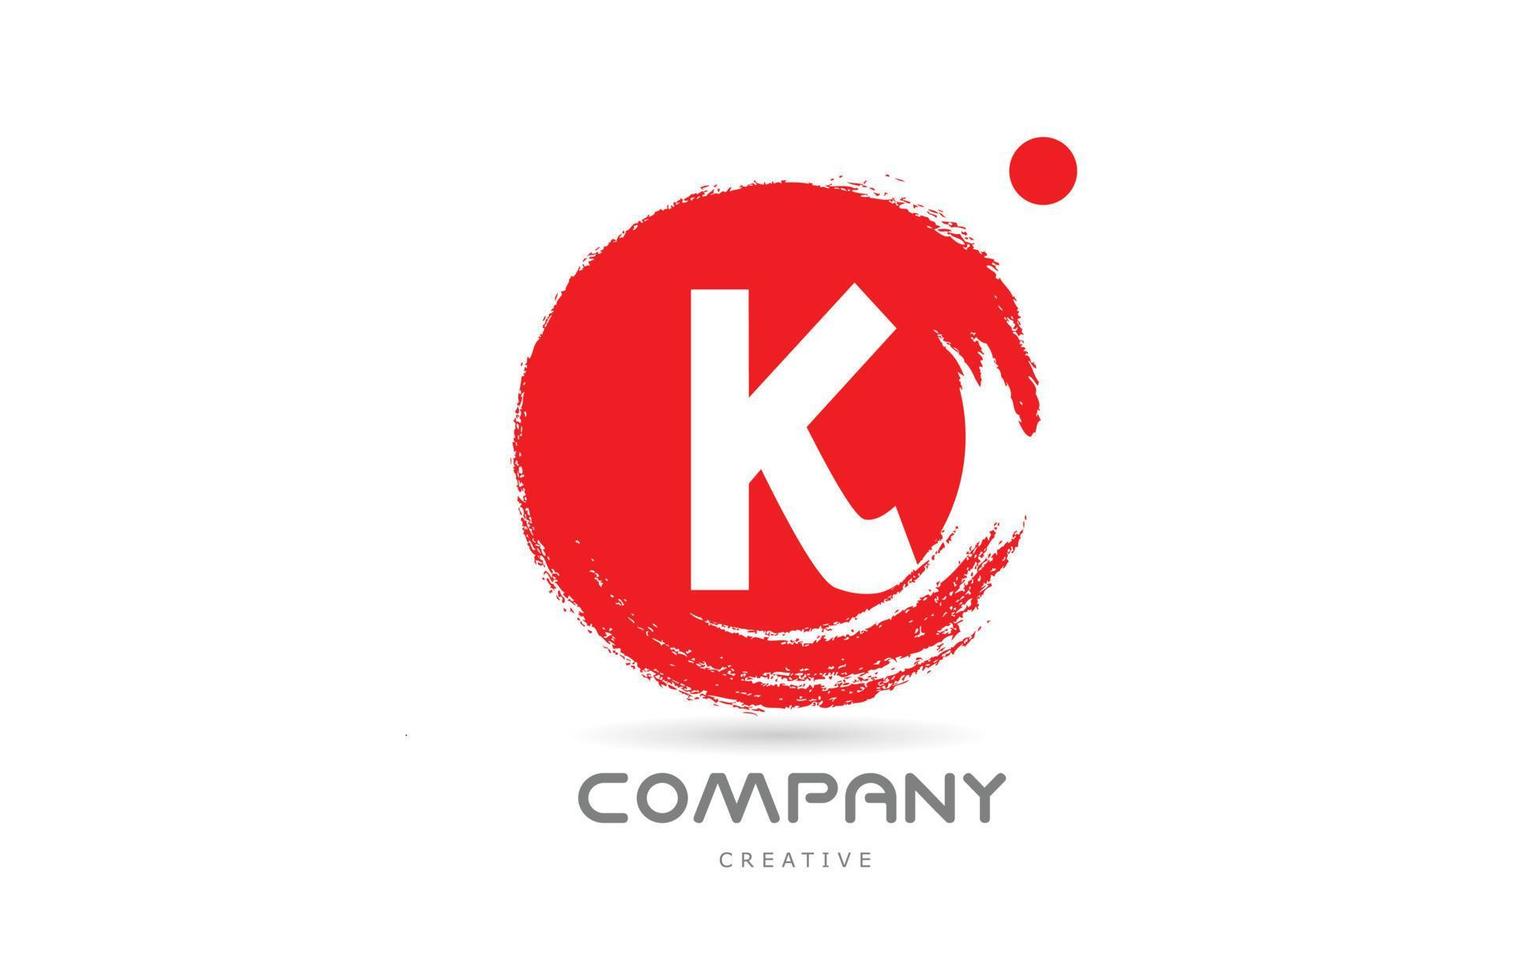 diseño de icono de logotipo de letra del alfabeto grunge k rojo con letras de estilo japonés. plantilla creativa para negocios y empresas. vector